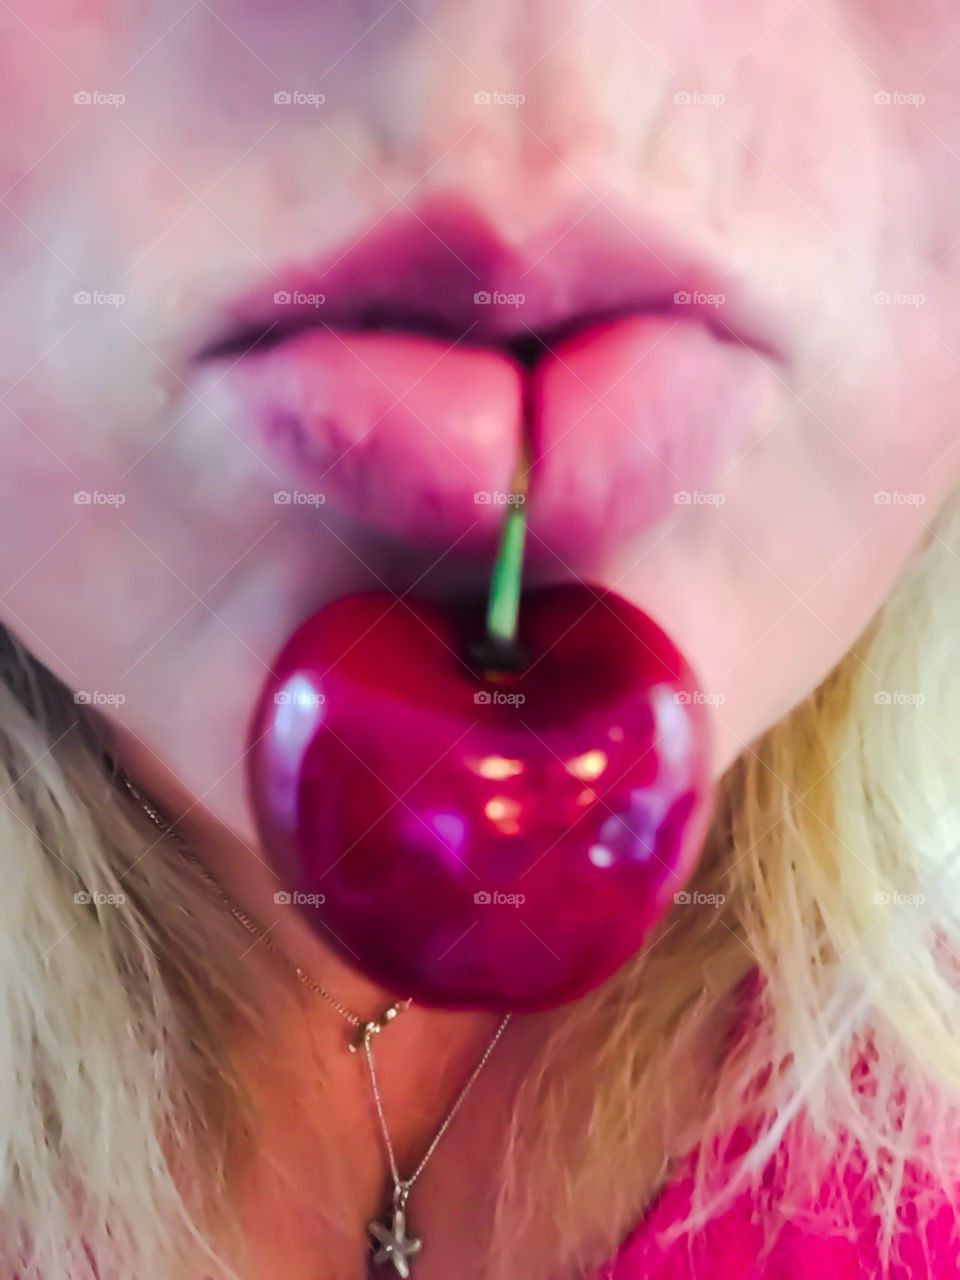 Cherry lips 